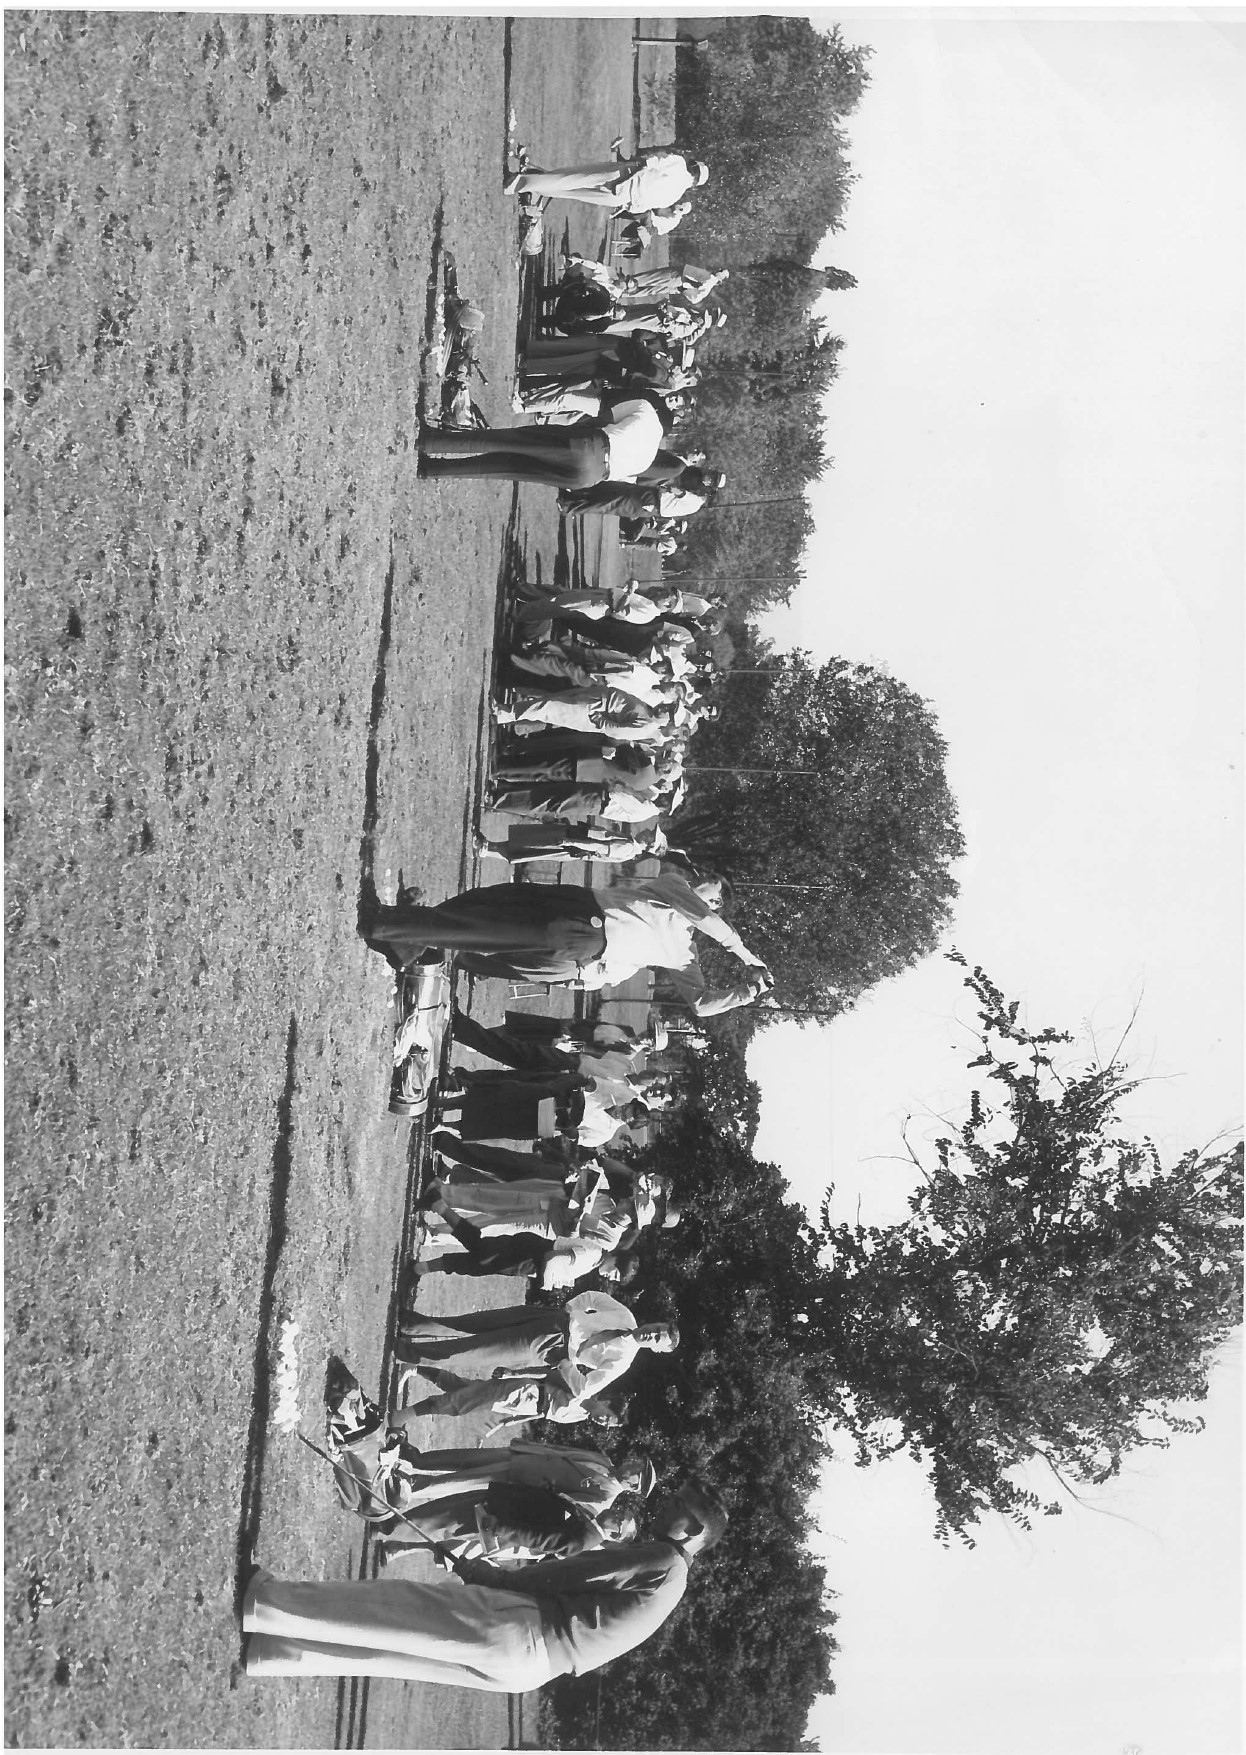 1953 Practice area Labatt Open